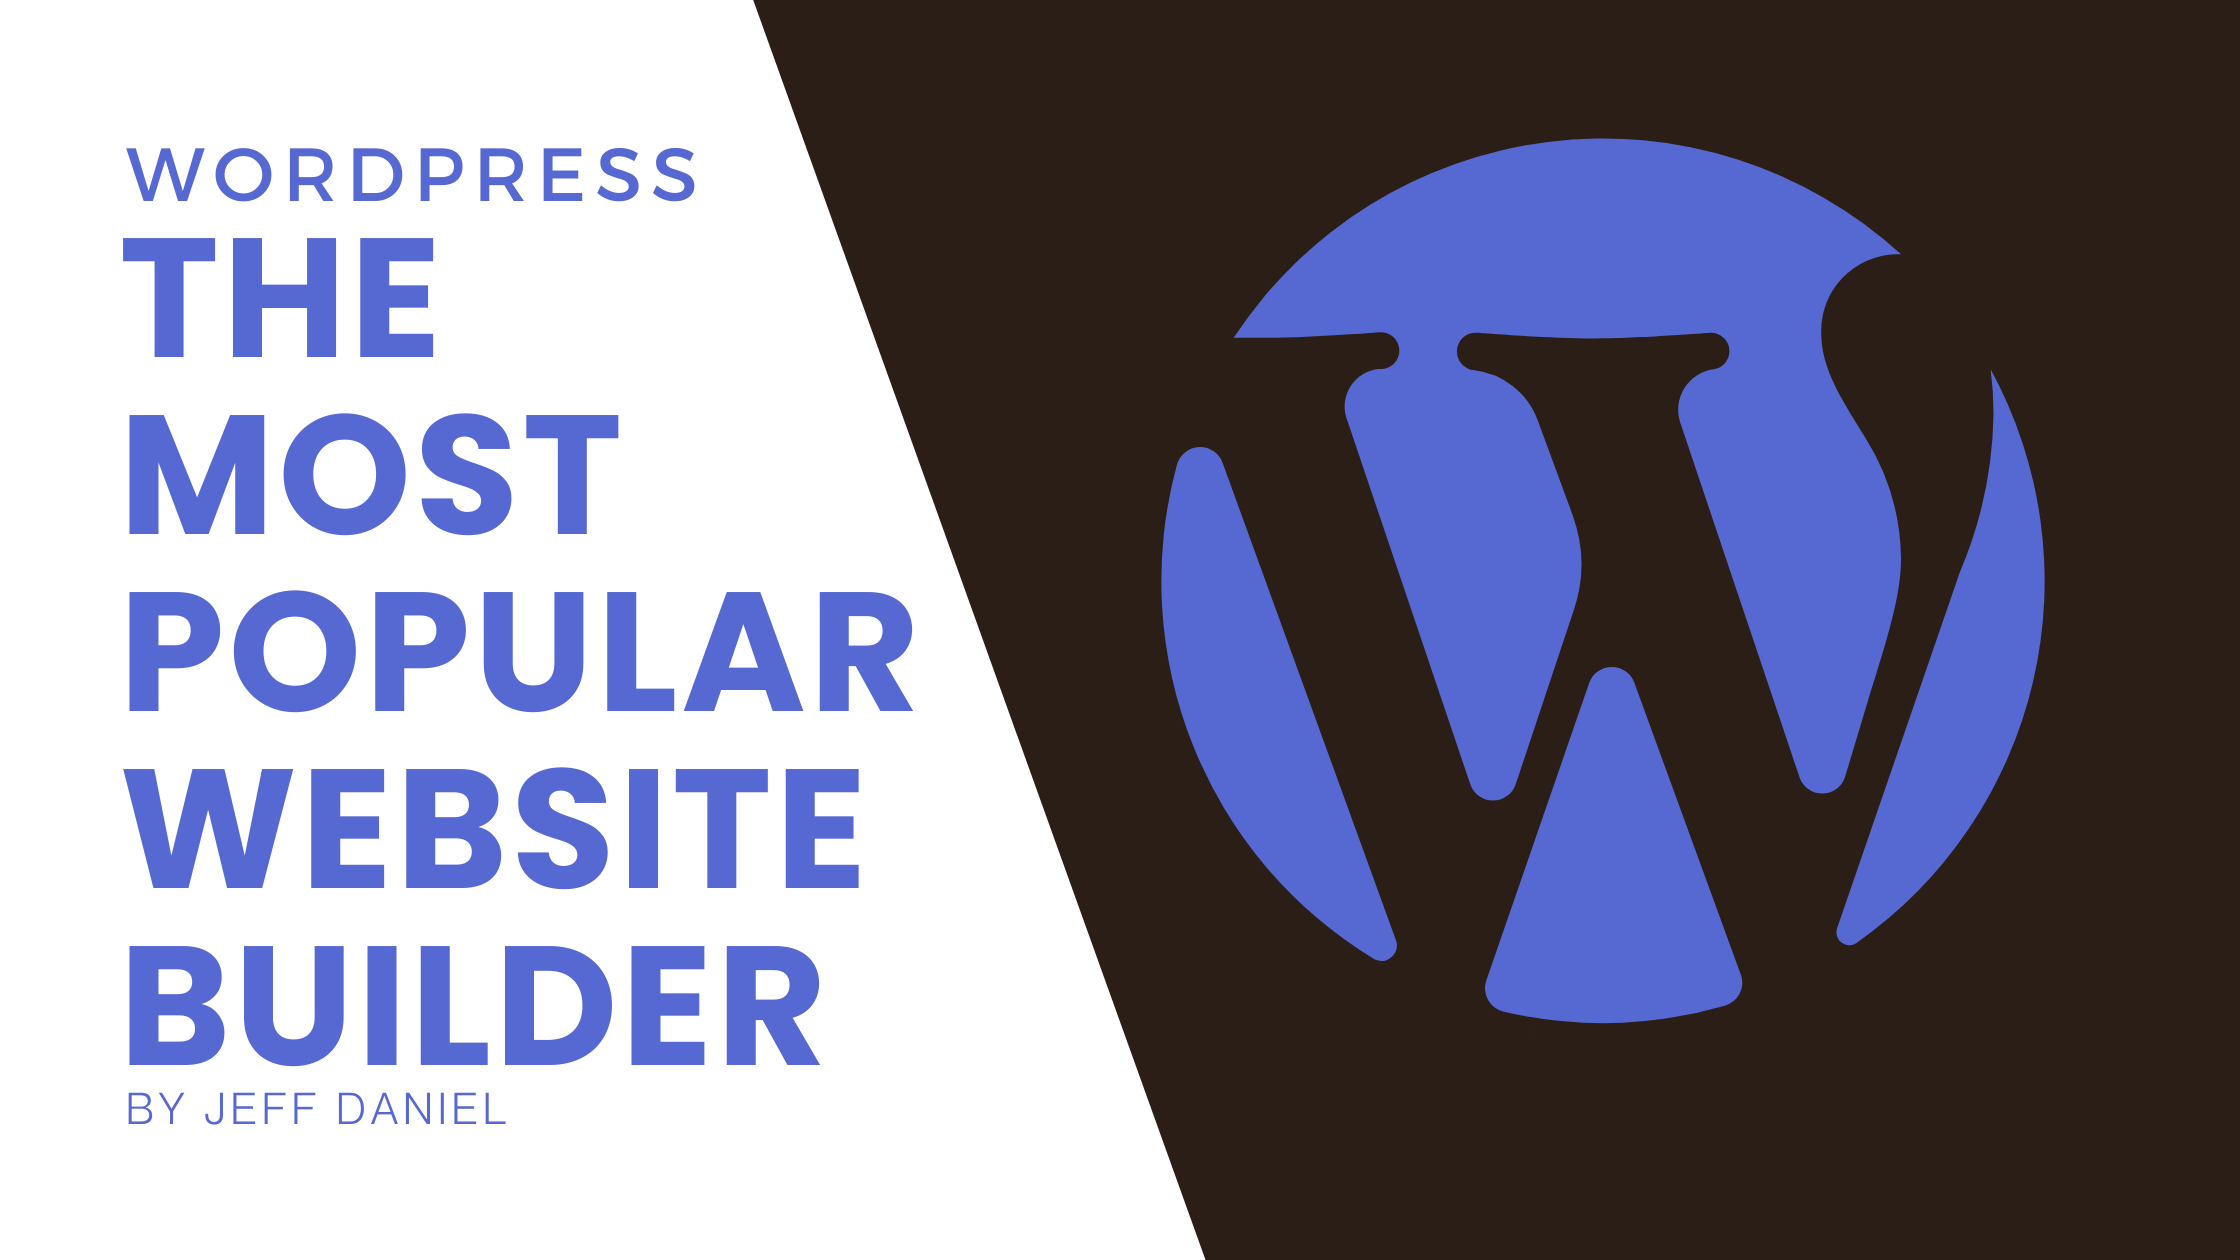 WORDPRESS The most Popular Website Builder